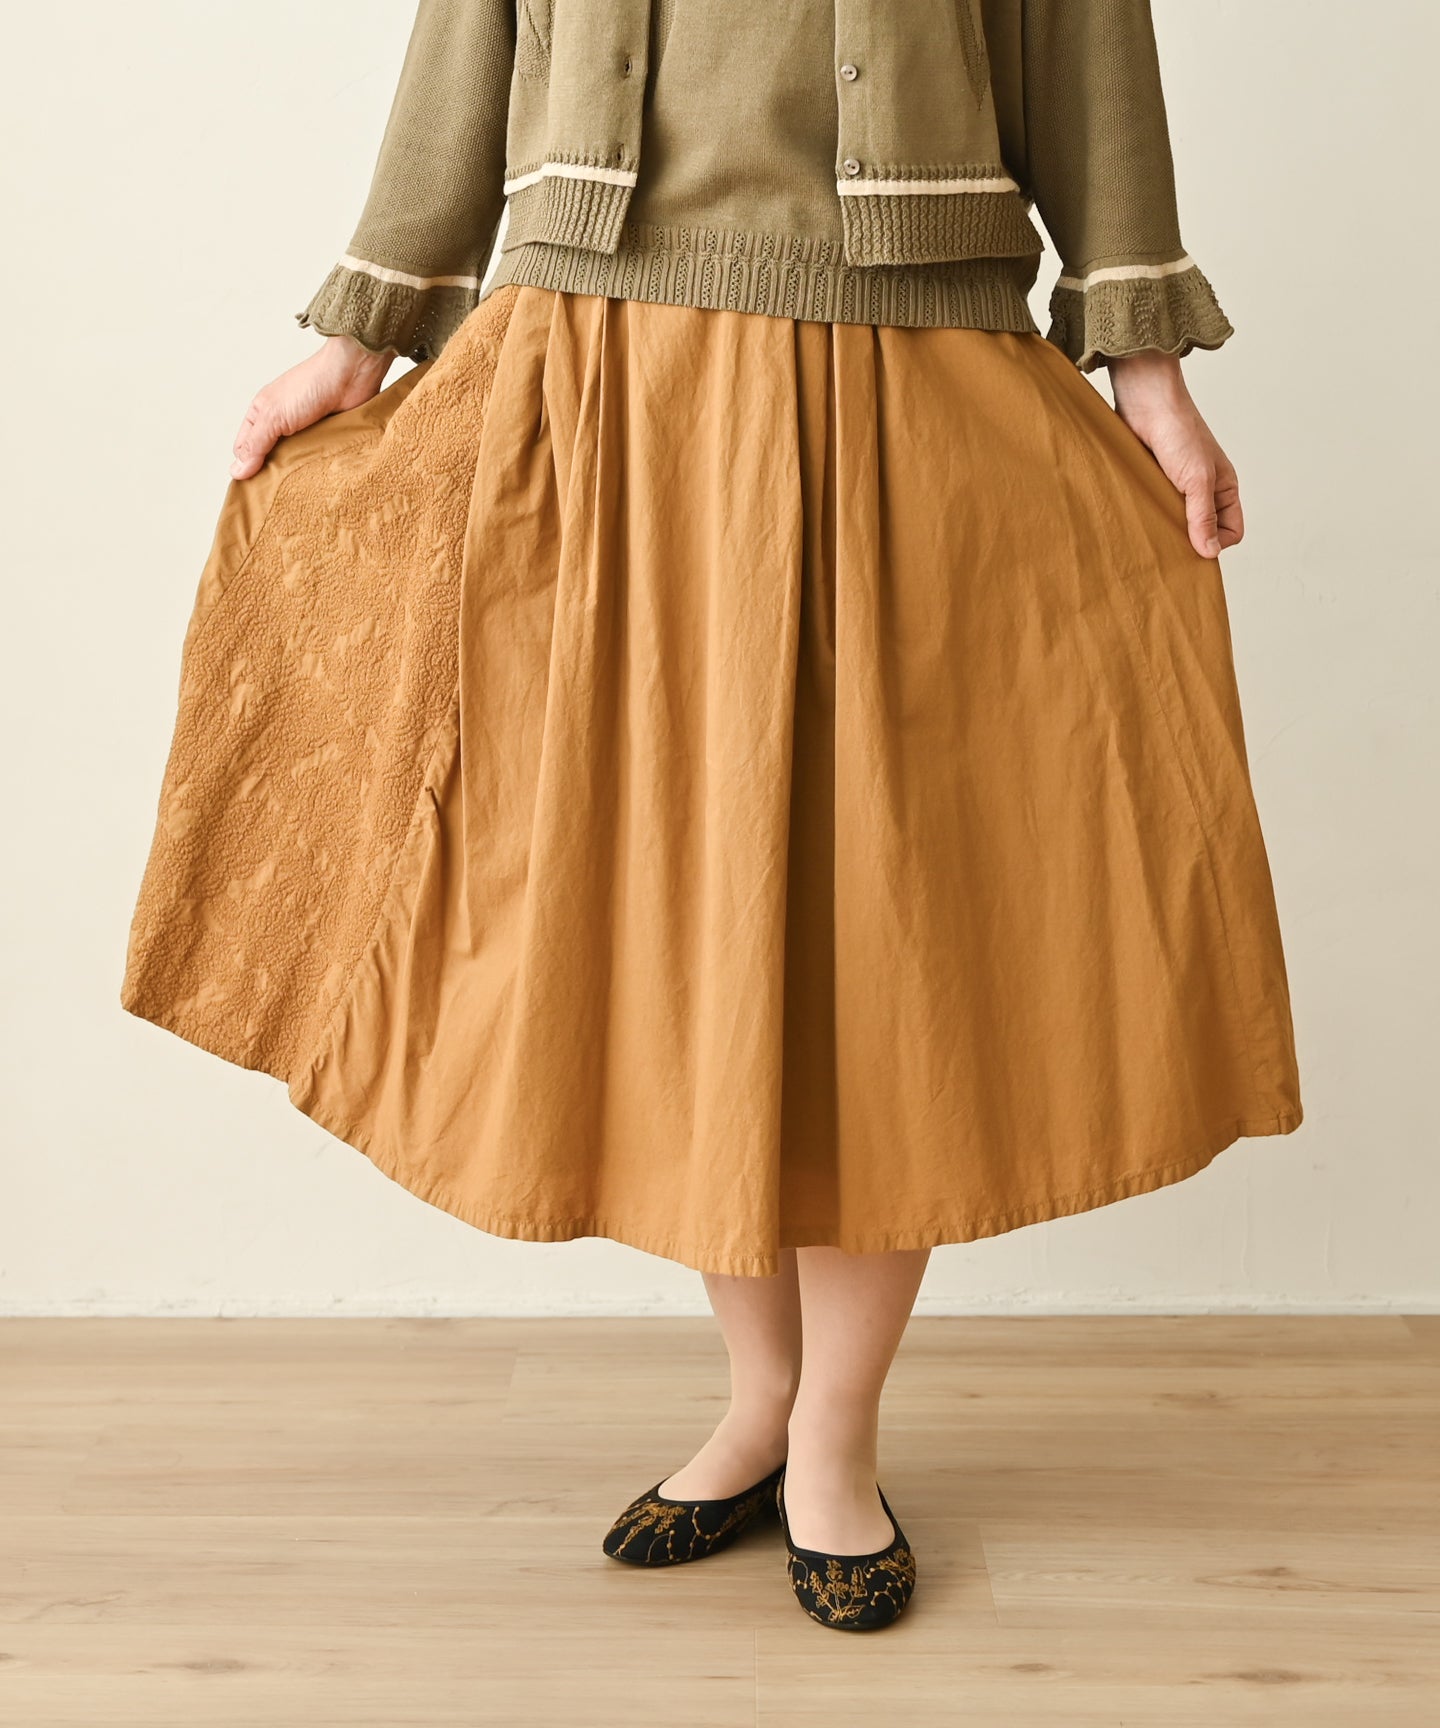 〈オーガニックコットン〉〈通年着られる〉フラワーノット刺繍 ウエスト後ろゴムあり 裏地あり ギャザースカート (muc206)